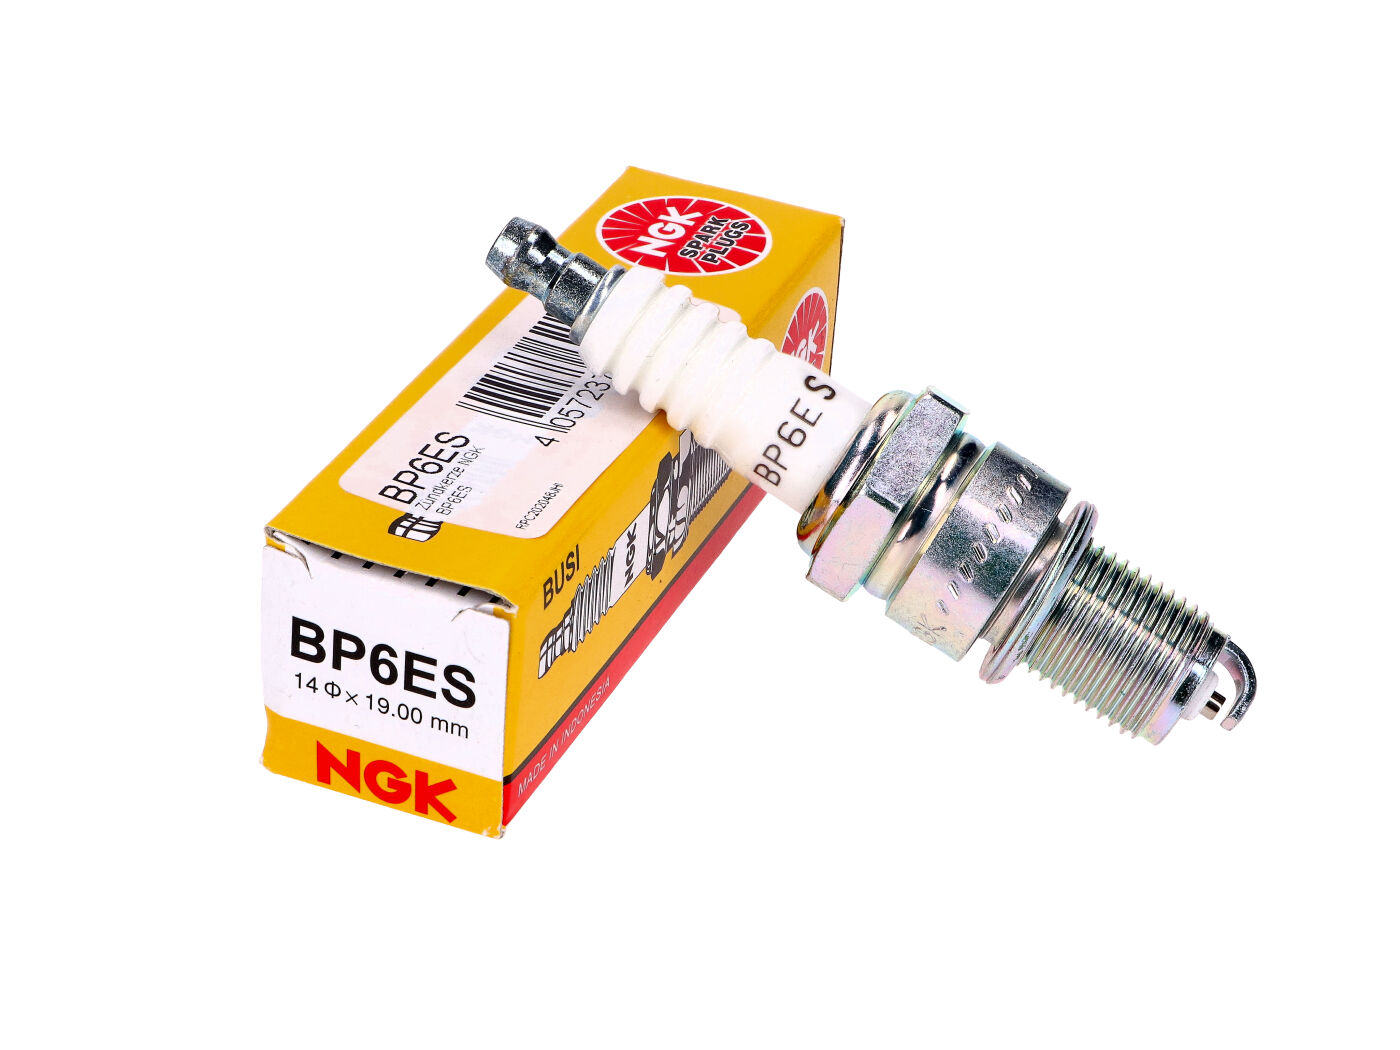 Genuine Spark Plug NGK BP6ES 7811 Fits Honda Engine GX120 Petrol Outboard Motor